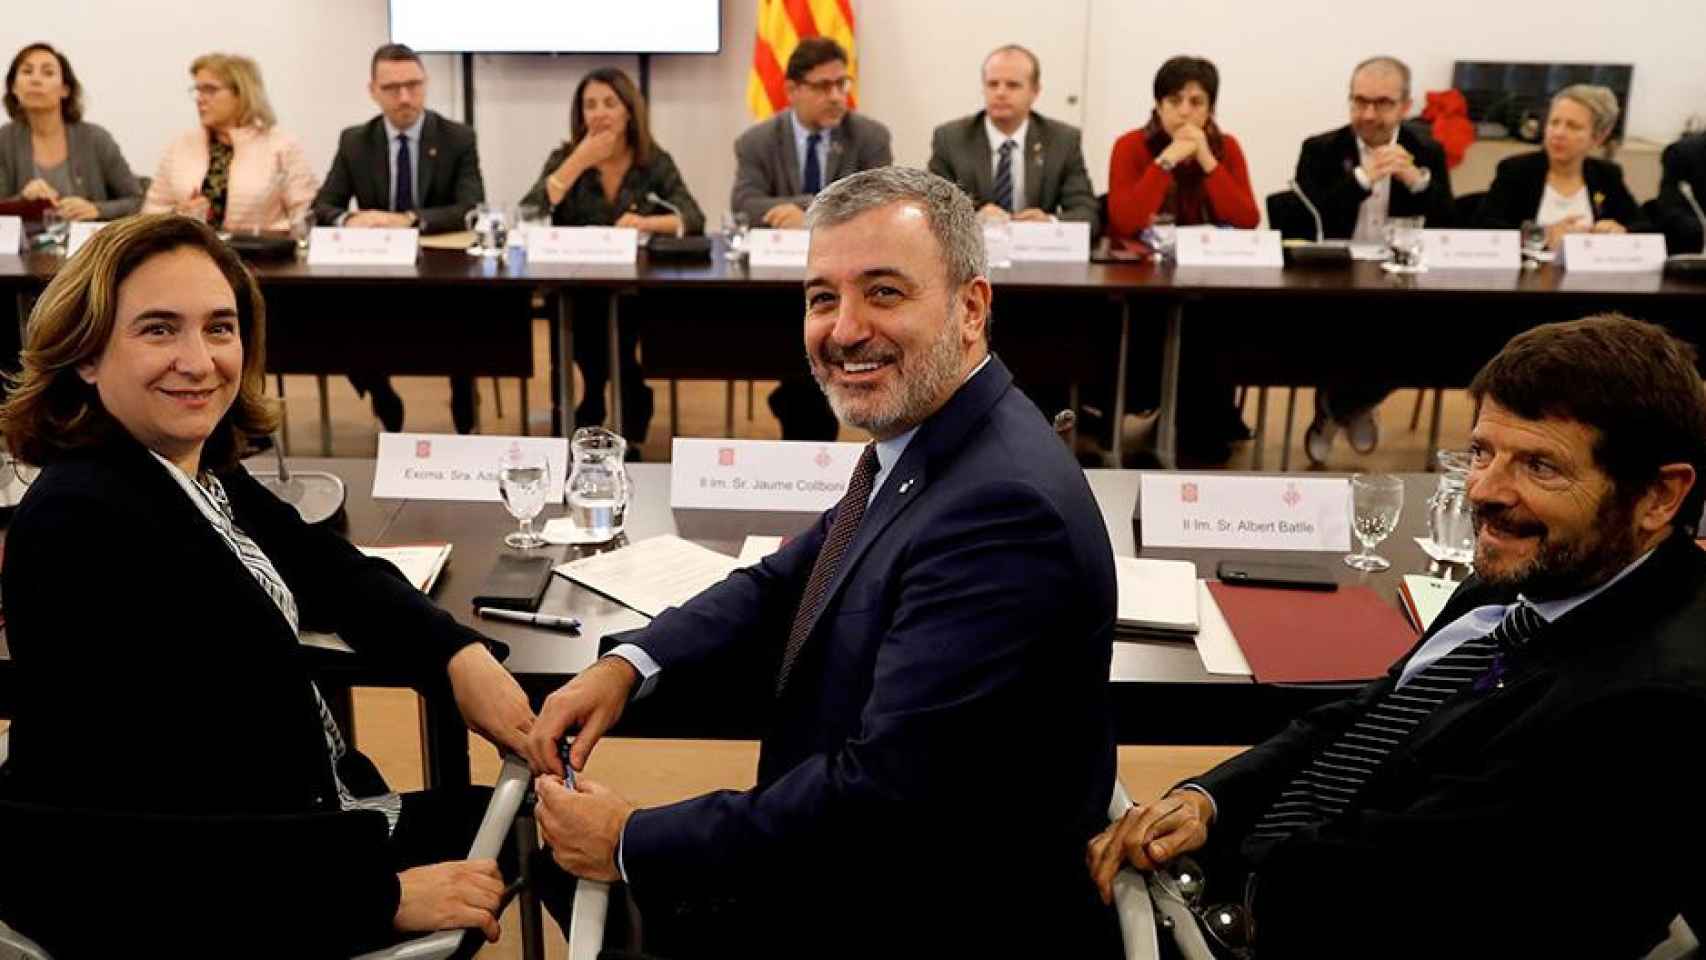 La alcaldesa de Barcelona de Barcelona, Ada Colau (i), junto a los teniente de alcalde Jaume Collboni (c) y Albert Batlle (d), al inicio de la reunión de la comisión mixta Generalitat-Ayuntamiento de Barcelona / EFE